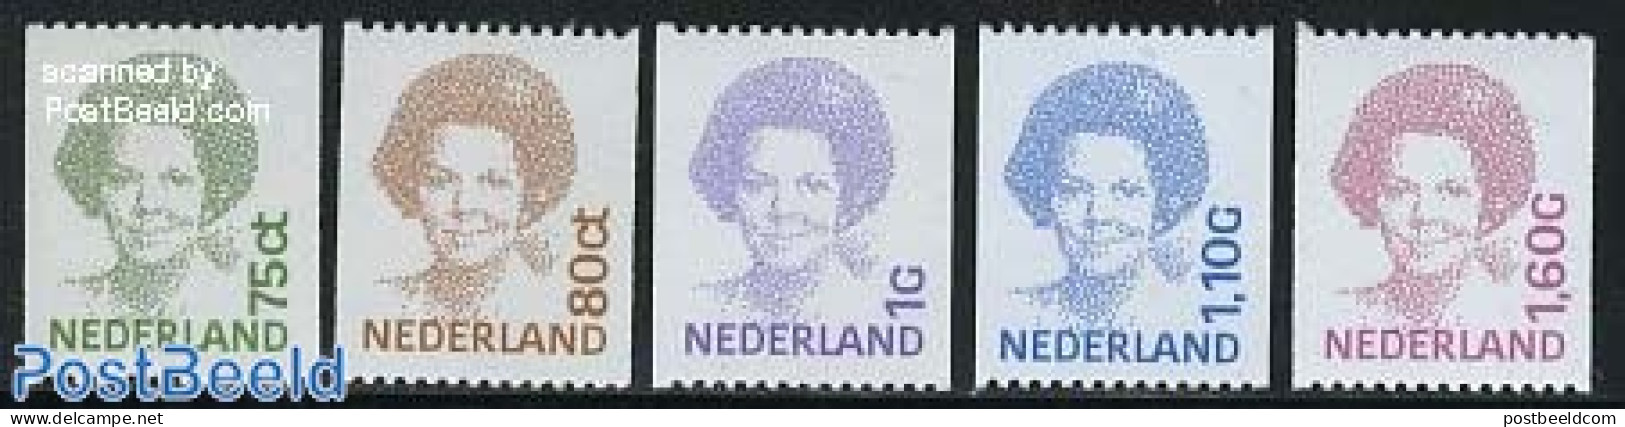 Netherlands 1991 Definitives, Coil Stamps 5v, Mint NH - Unused Stamps